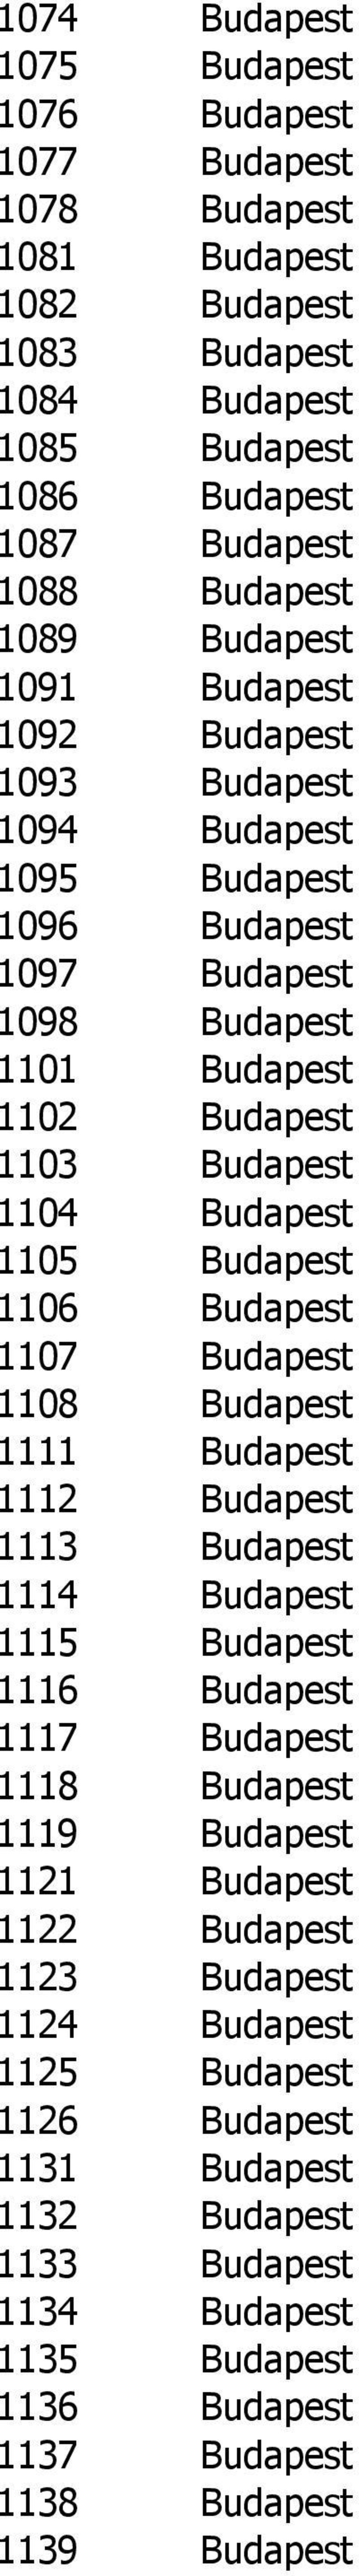 Budapest 1106 Budapest 1107 Budapest 1108 Budapest 1111 Budapest 1112 Budapest 1113 Budapest 1114 Budapest 1115 Budapest 1116 Budapest 1117 Budapest 1118 Budapest 1119 Budapest 1121